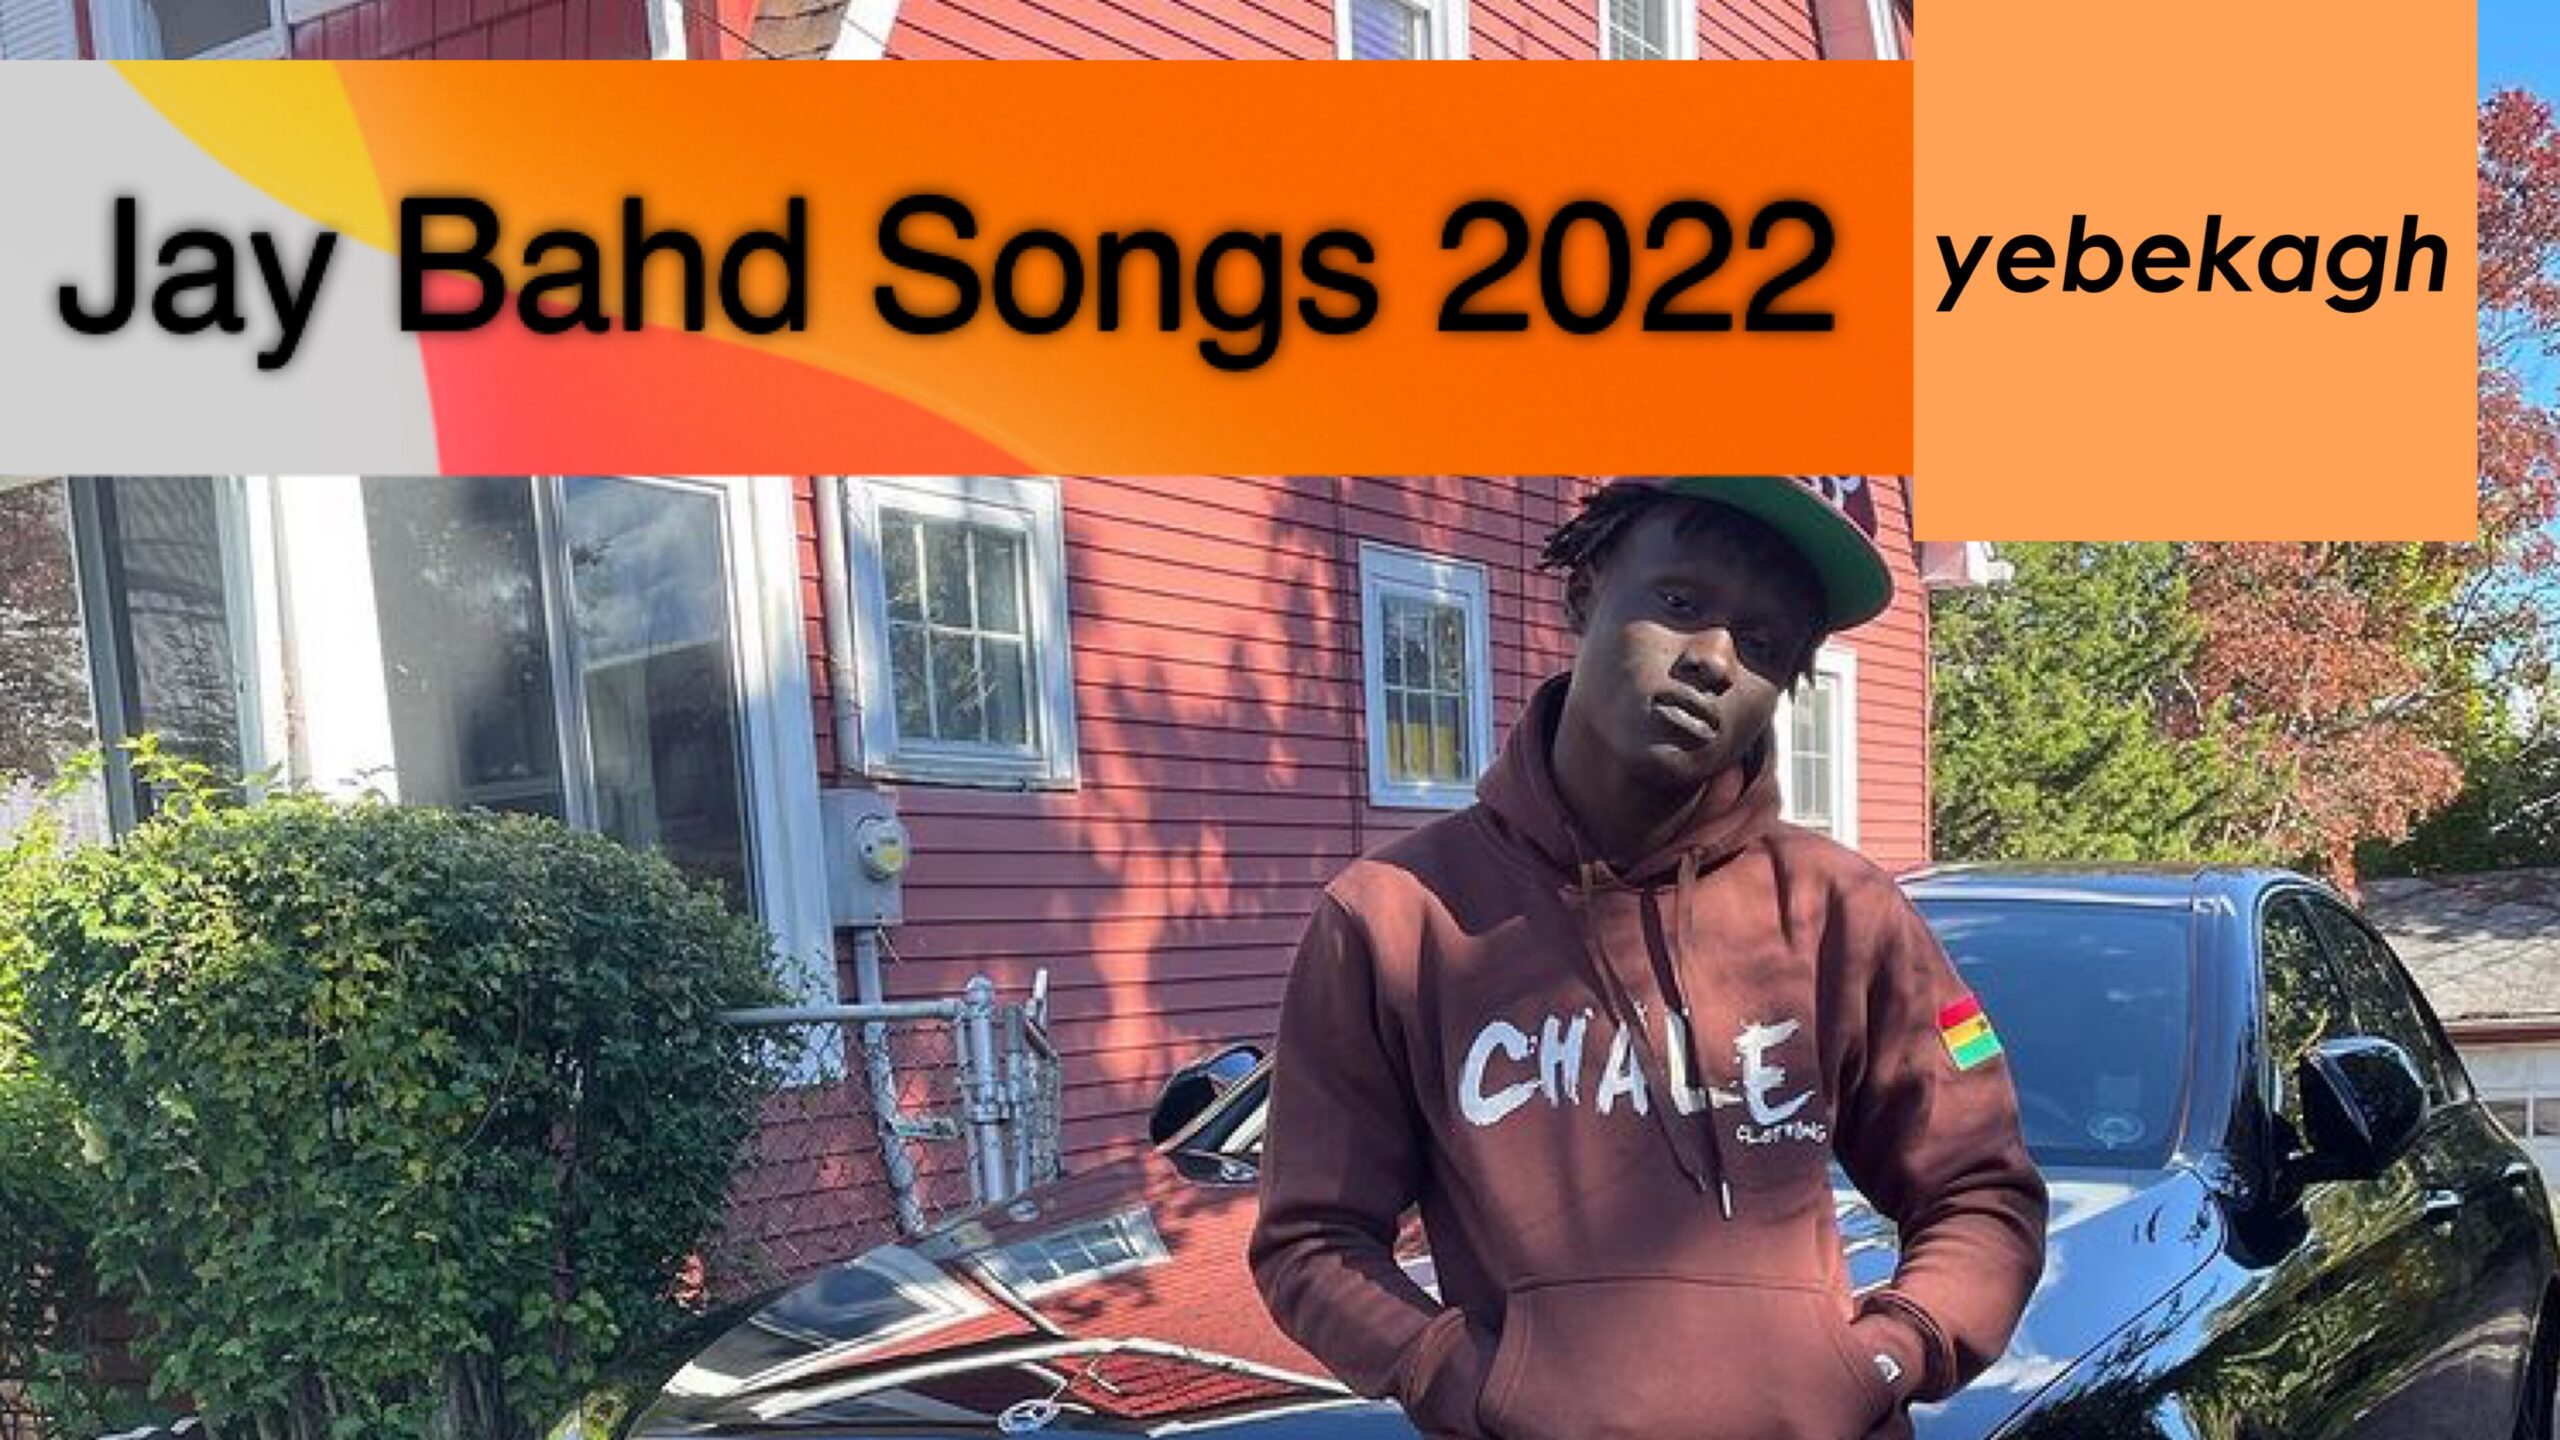 Full List of Jay Bahd Songs in 2022